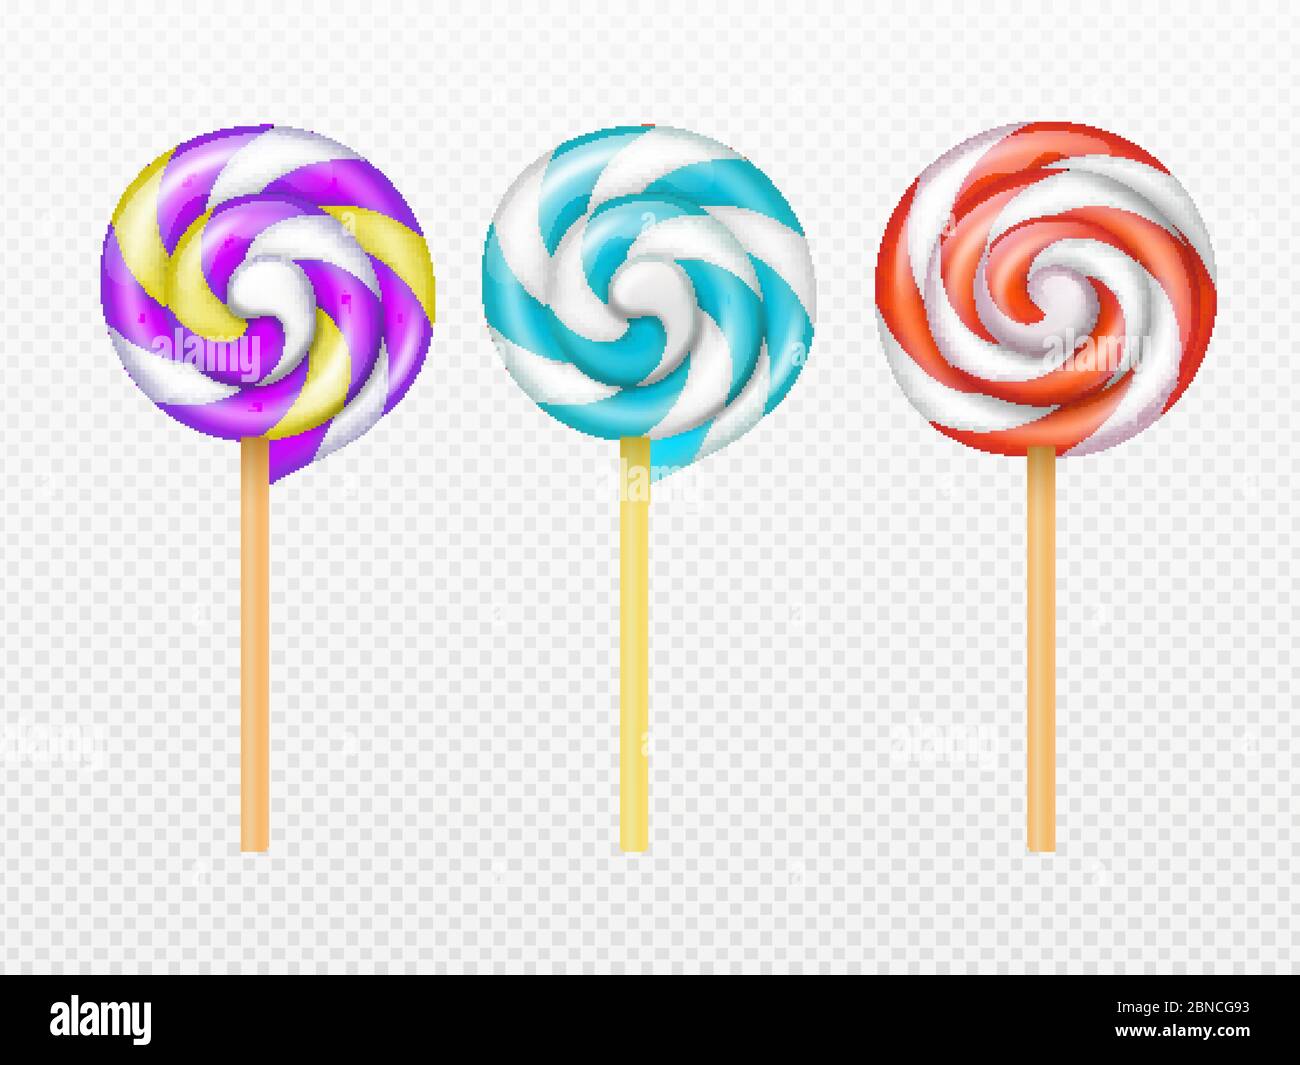 Vettore realistico di lollipop di swirl isolato su sfondo bianco. Illustrazione di caramello lollipop e lolly, spirali yummy swirl Illustrazione Vettoriale